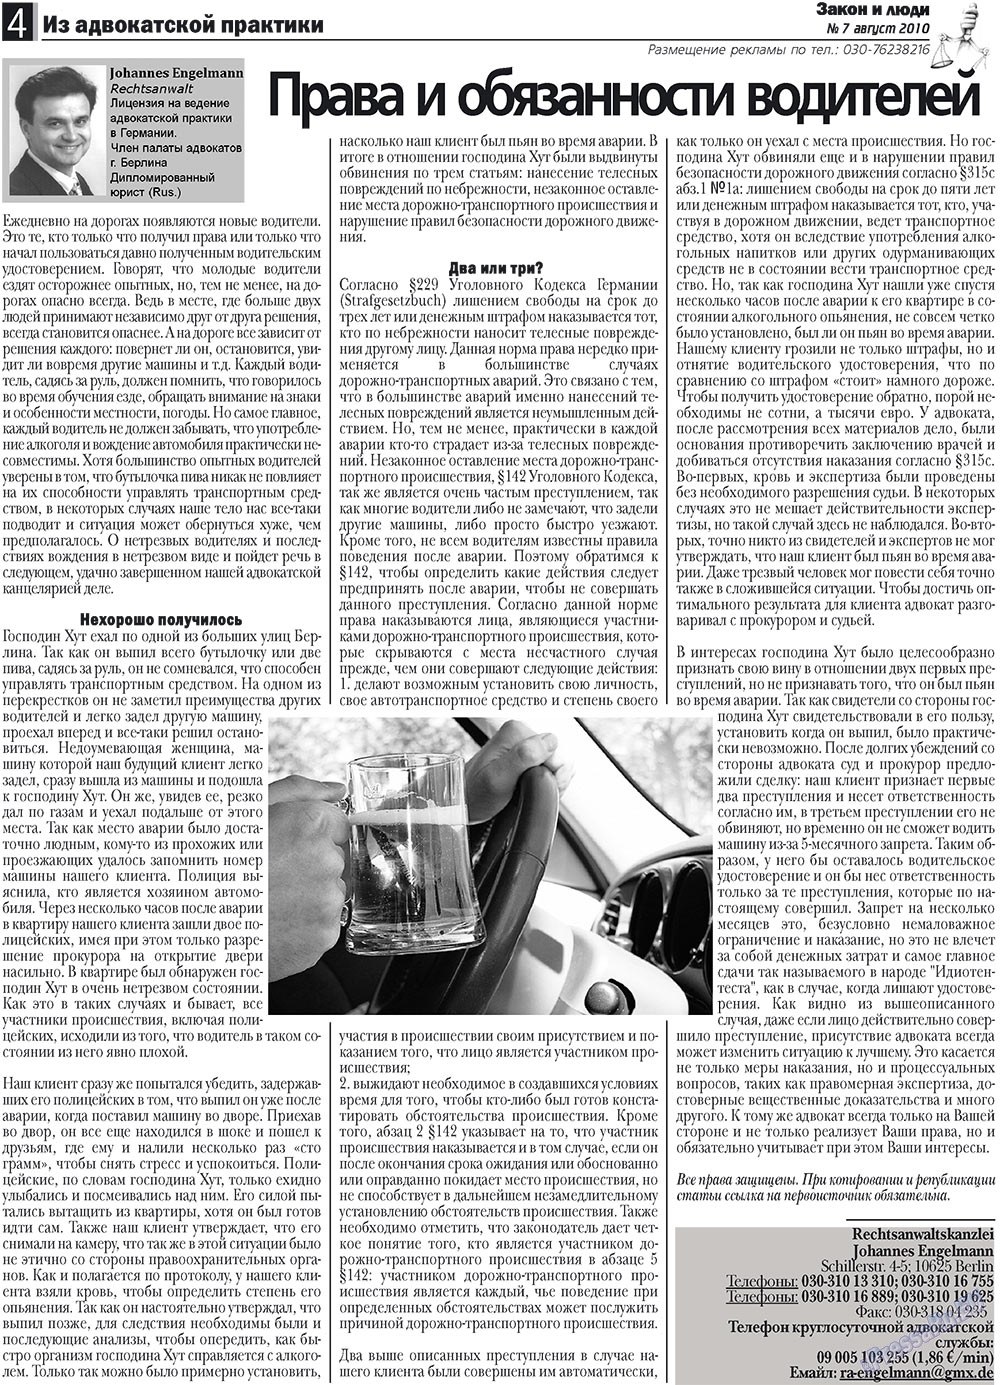 Закон и люди (газета). 2010 год, номер 7, стр. 4